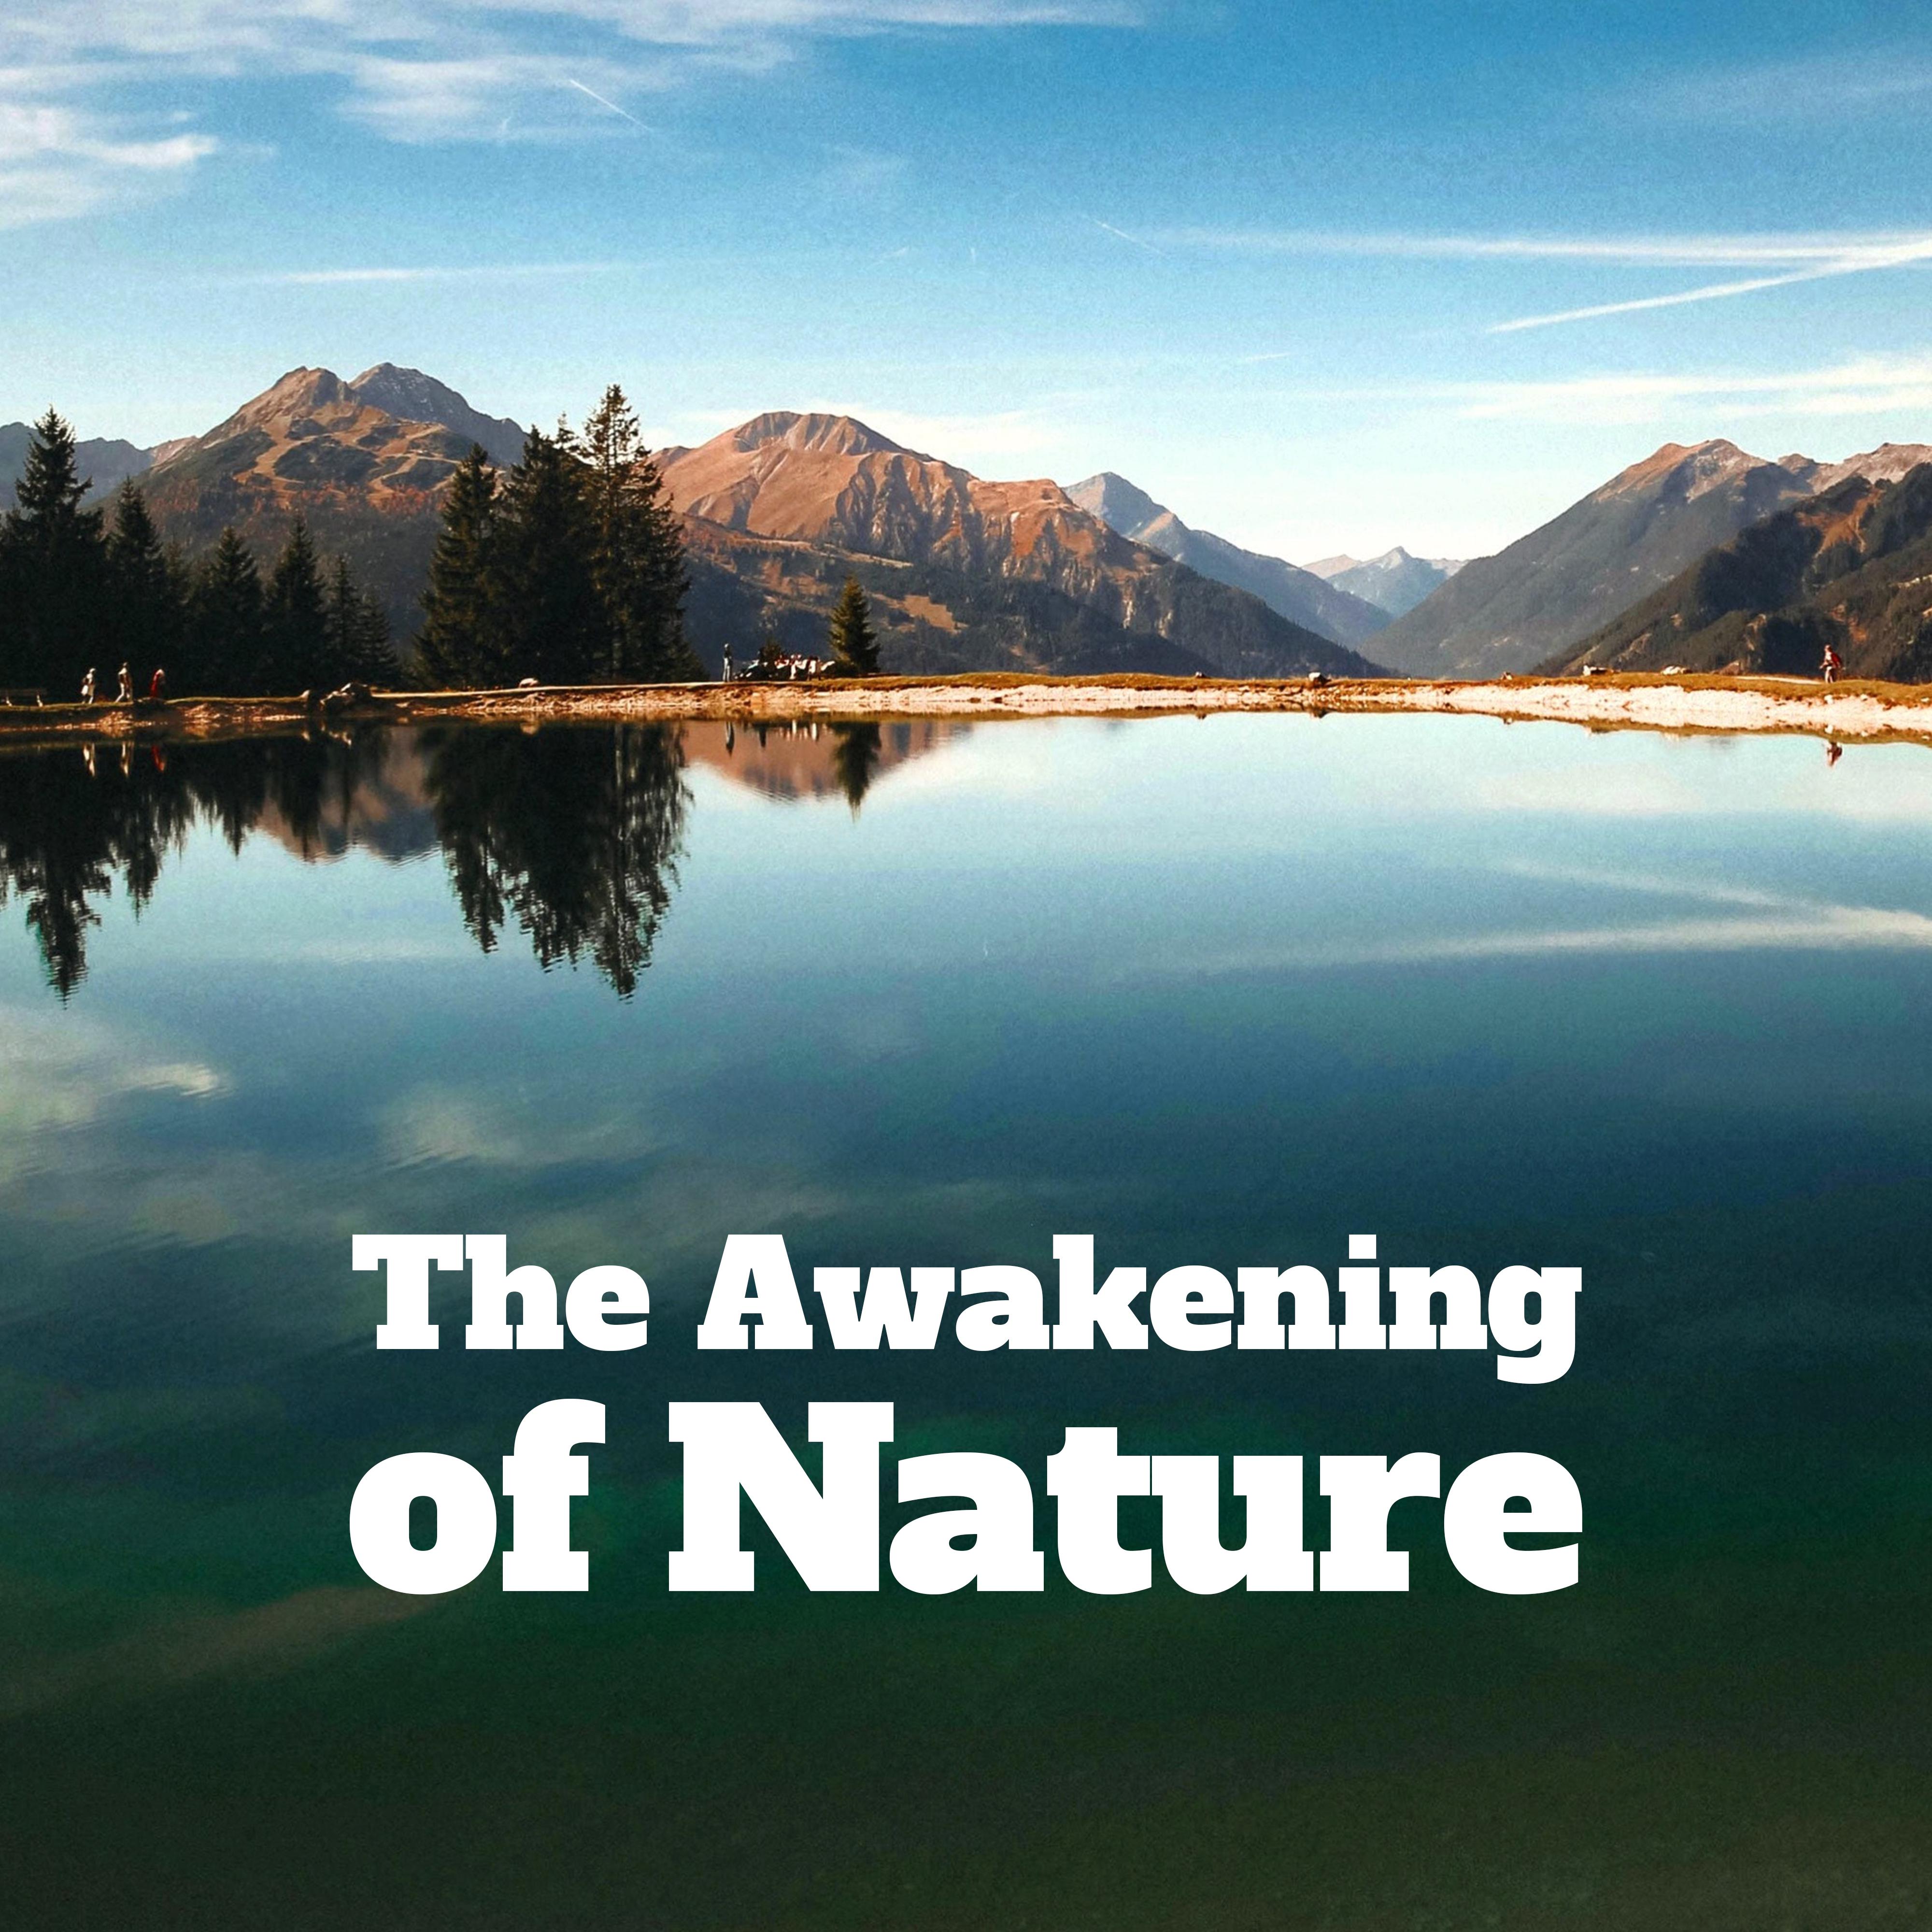 The Awakening of Nature